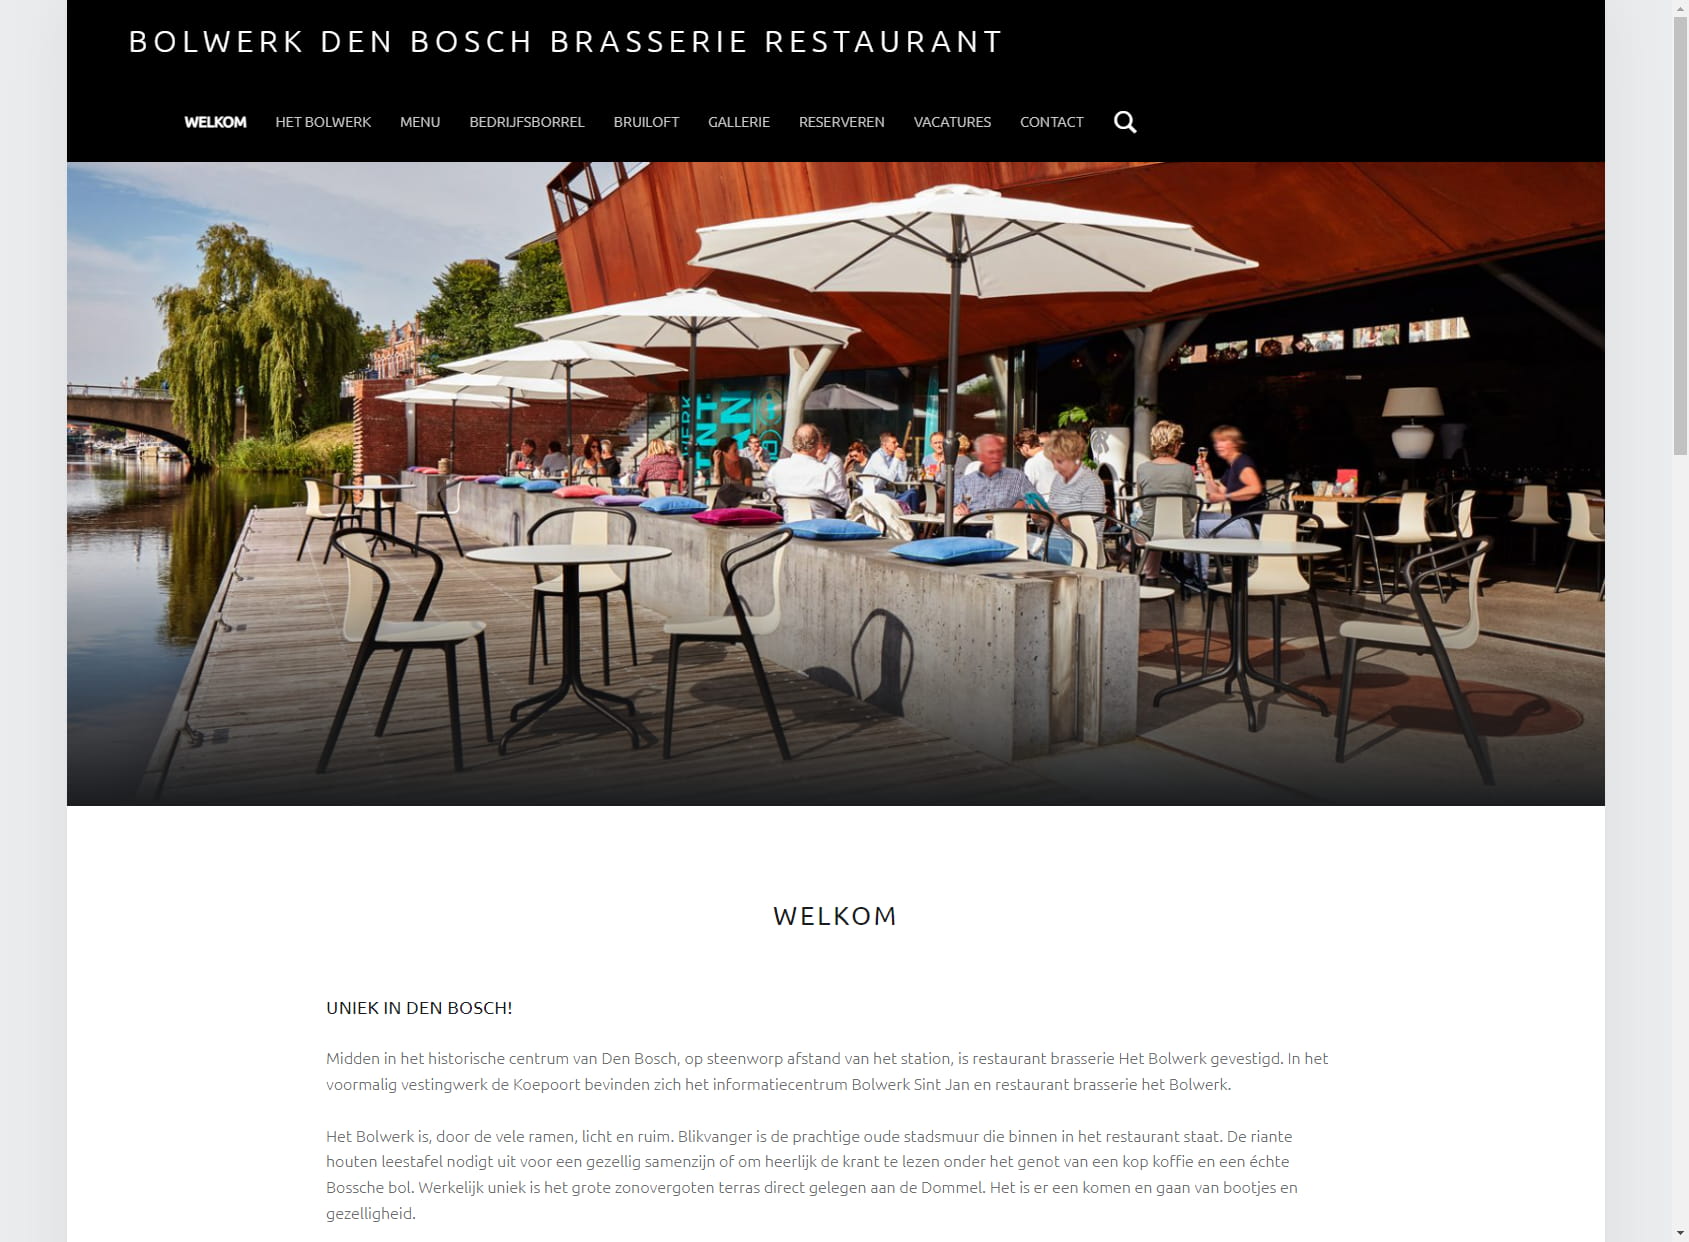 Brasserie Restaurant Bolwerk